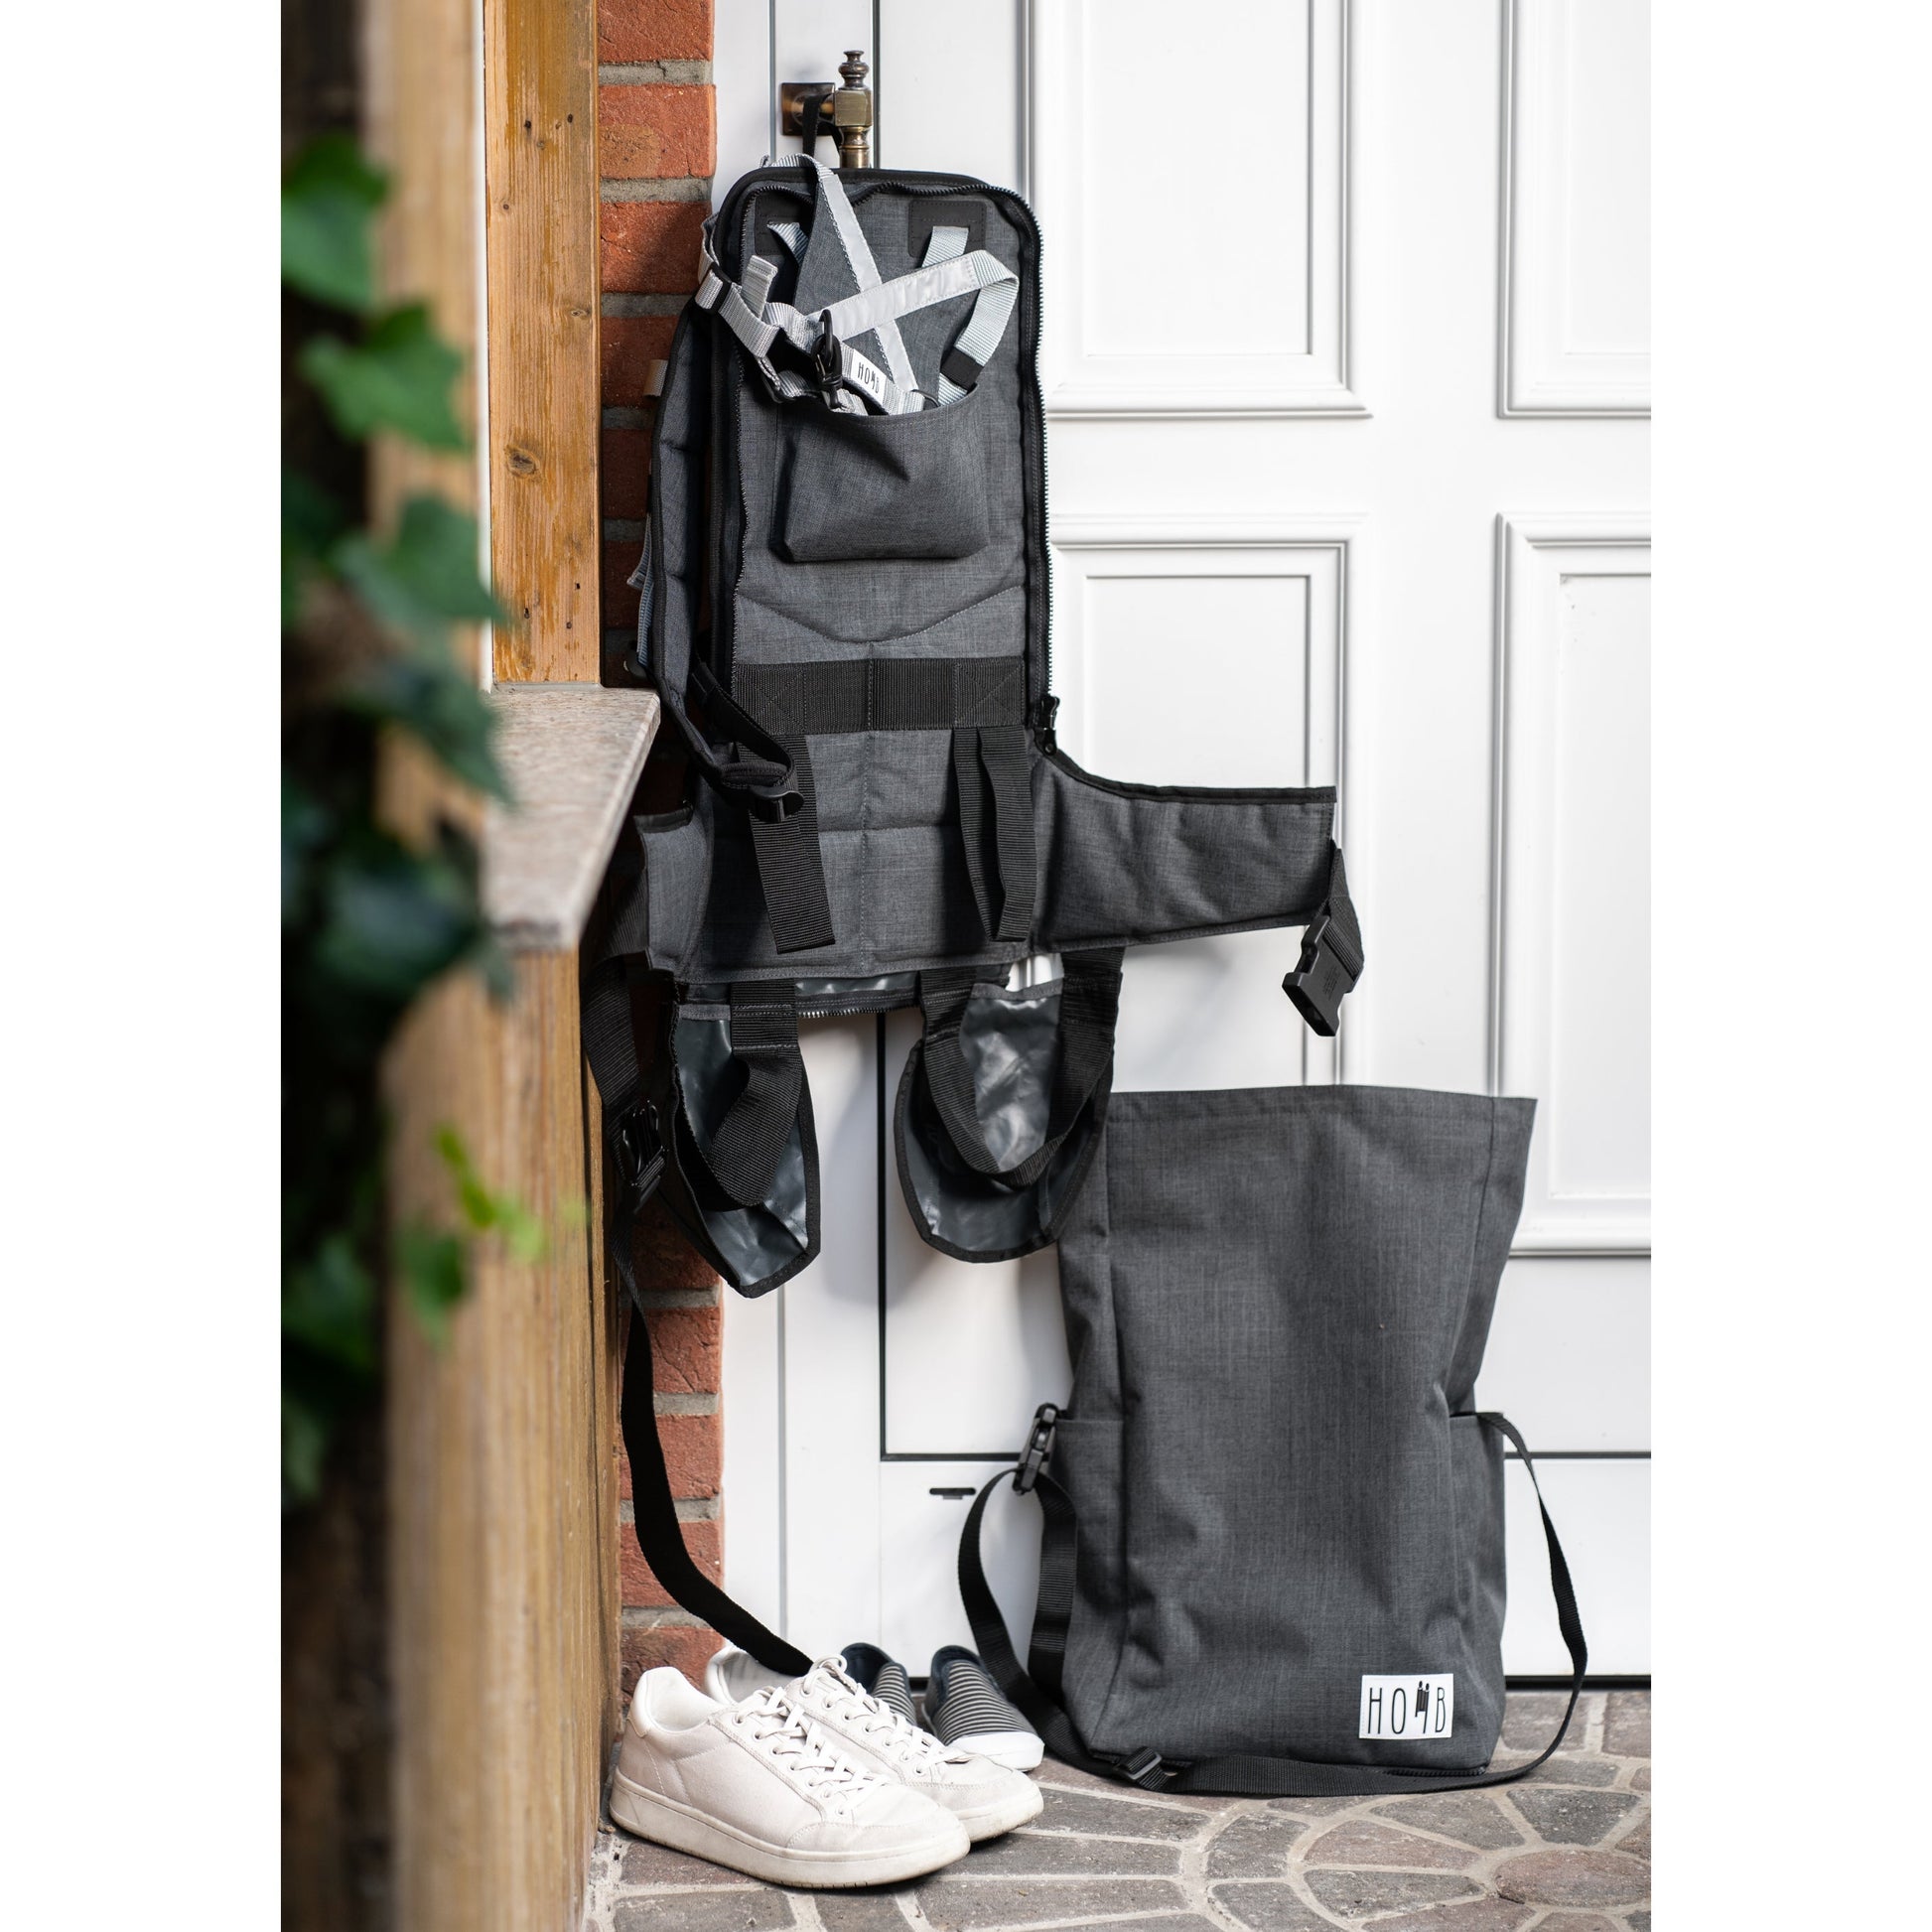 HOMB - Rucksack mit Rückentrage - Kindertrage ab 2 Jahre bis 25 kg-9